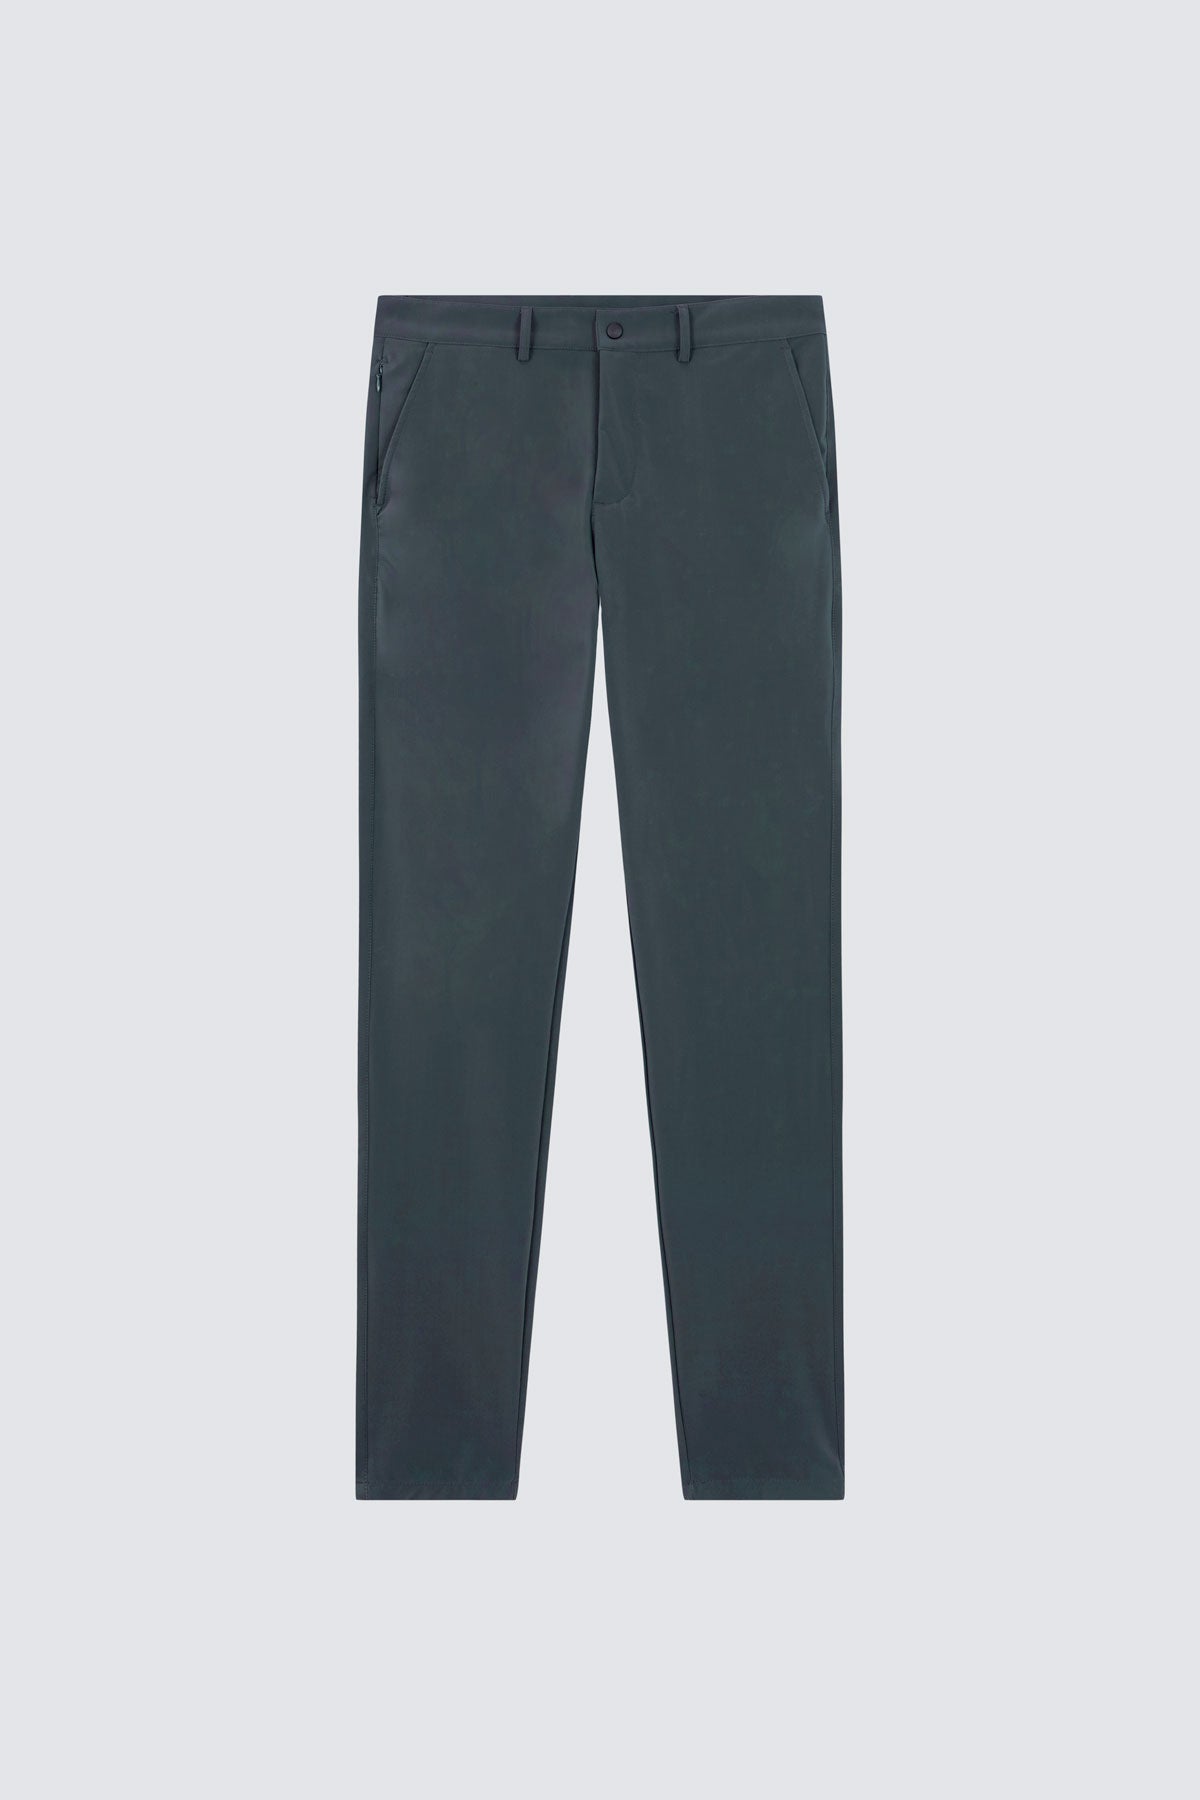 Pantalón para hombre gris: Pantalón chino regular gris para hombre con tecnología termorreguladora Coolmax. Foto prenda en plano